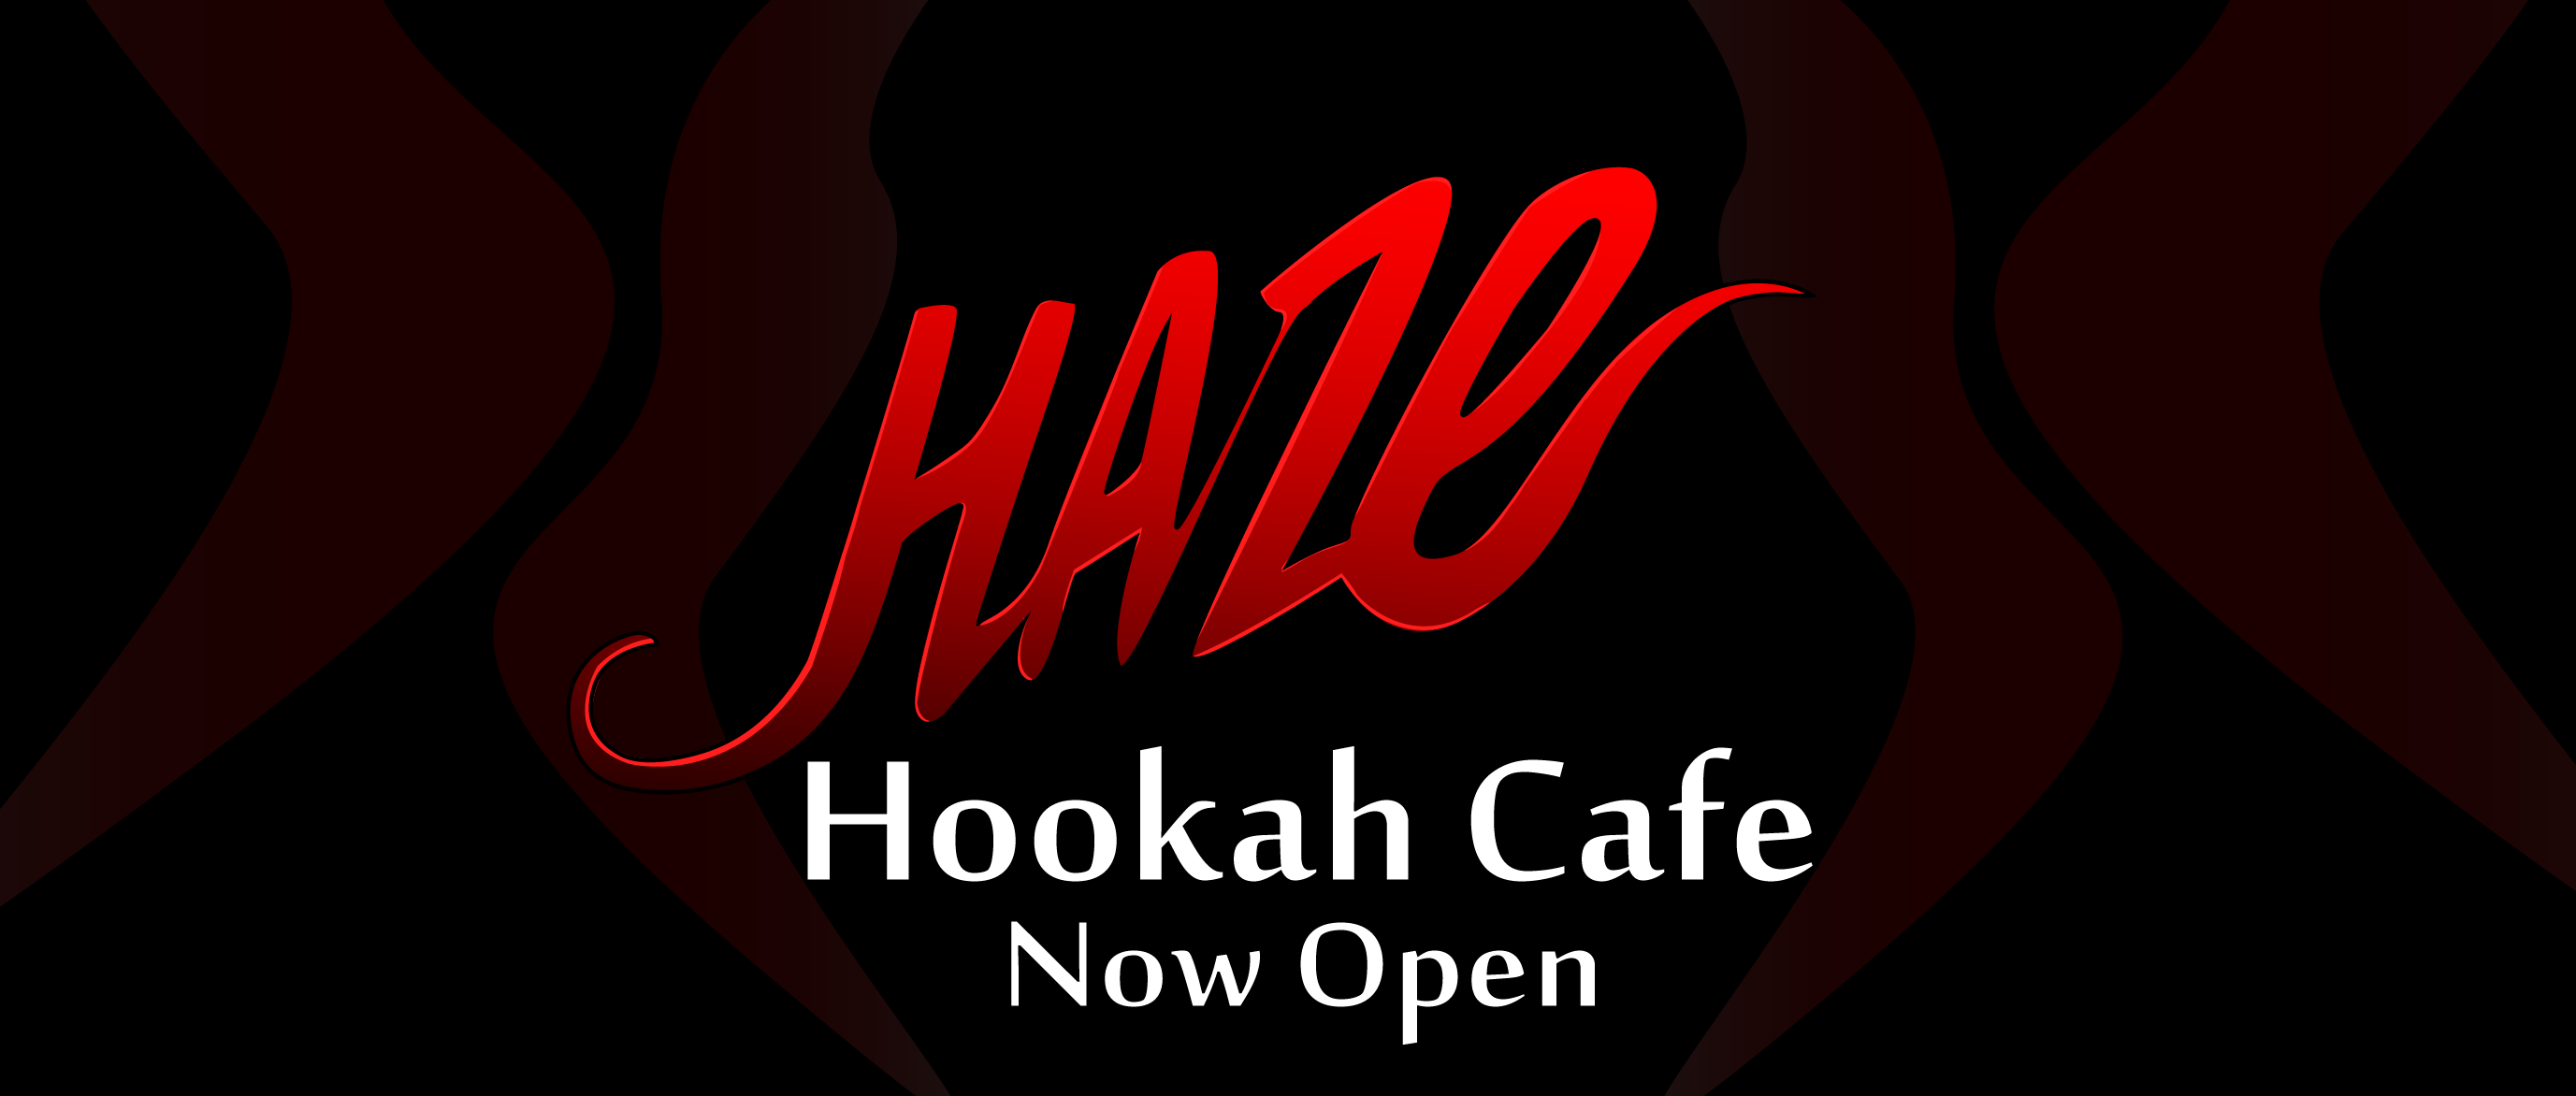 Haze Hookah Café